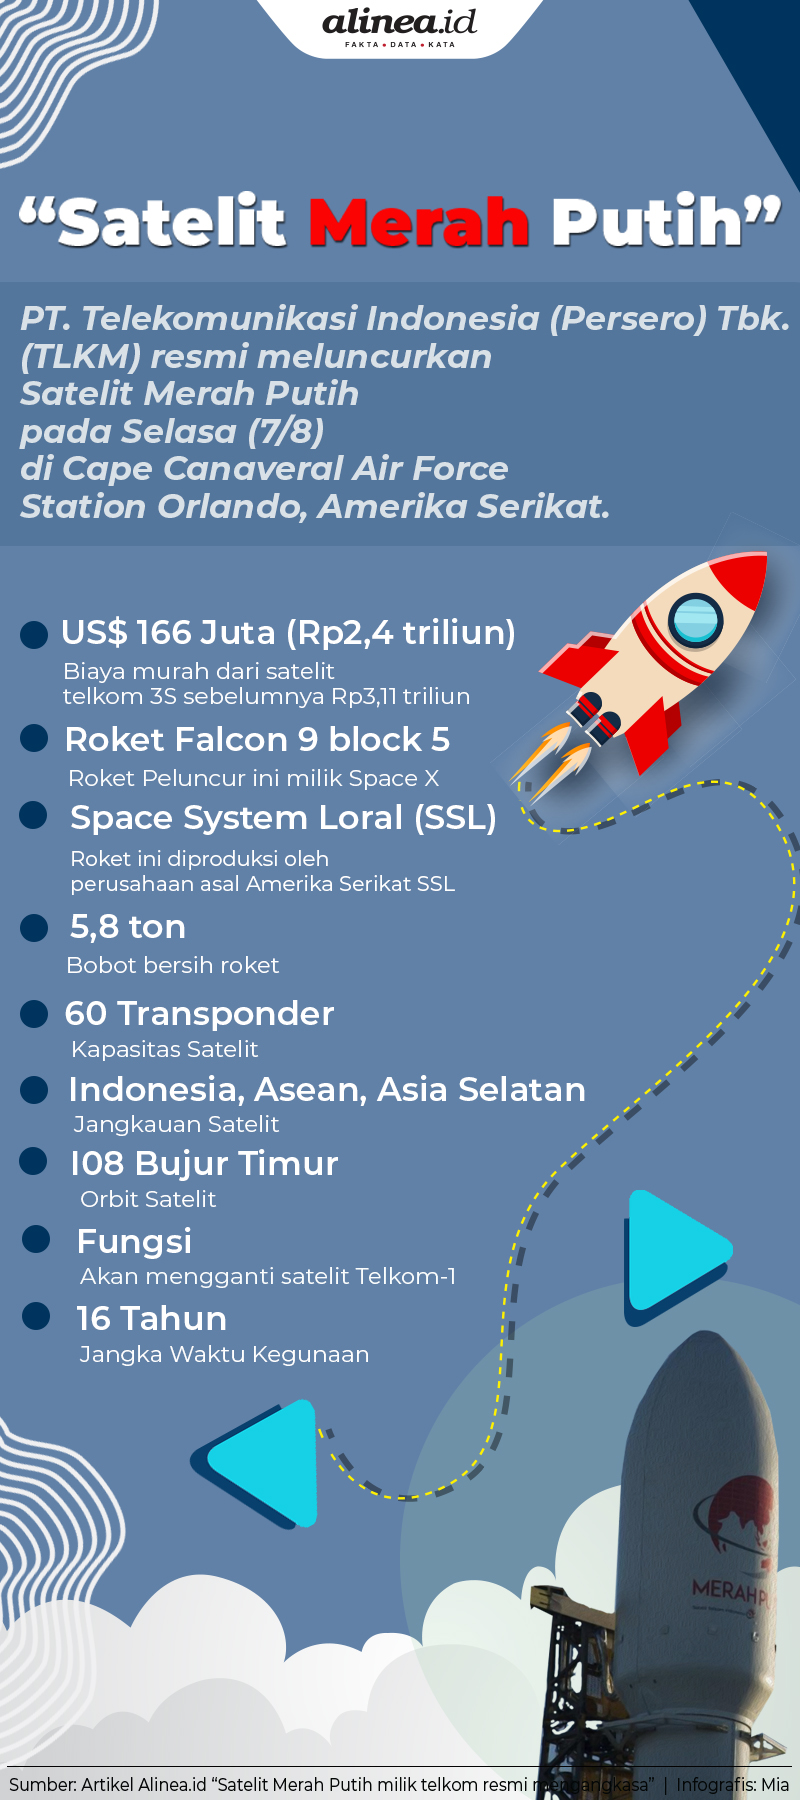 PT Telekomunikasi Indonesia Tbk. resmi meluncurkan satelit Merah Putih. Alinea.id. 